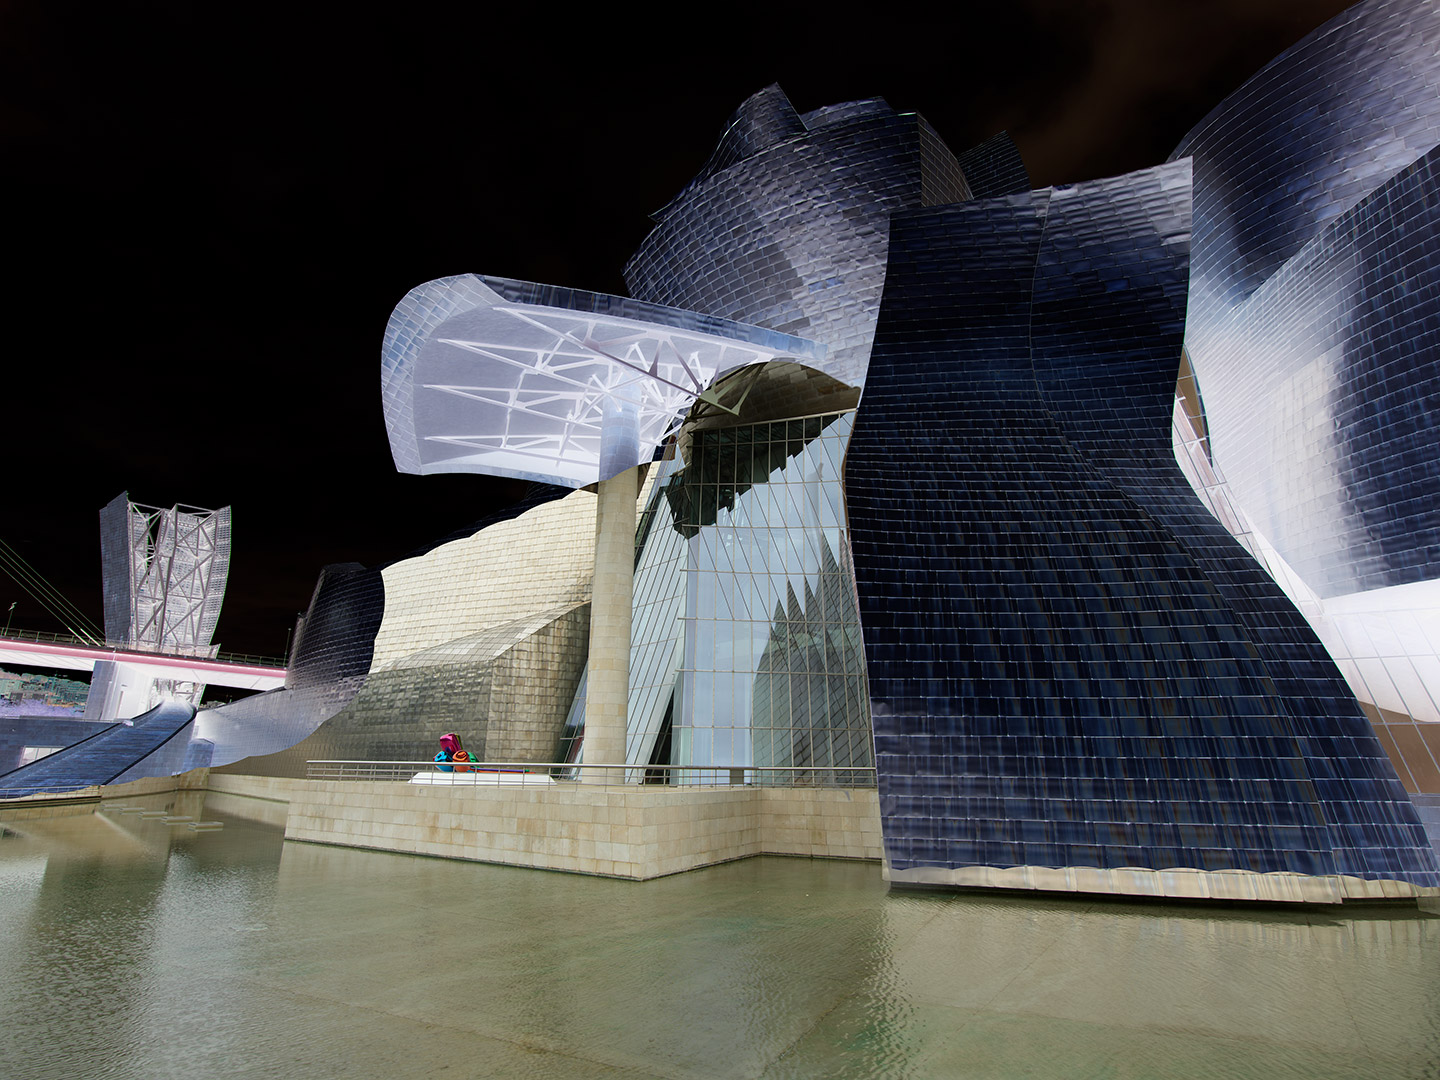 Guggenheim Museum Bilbao 04-10-2020 - Direct printing on Dibond